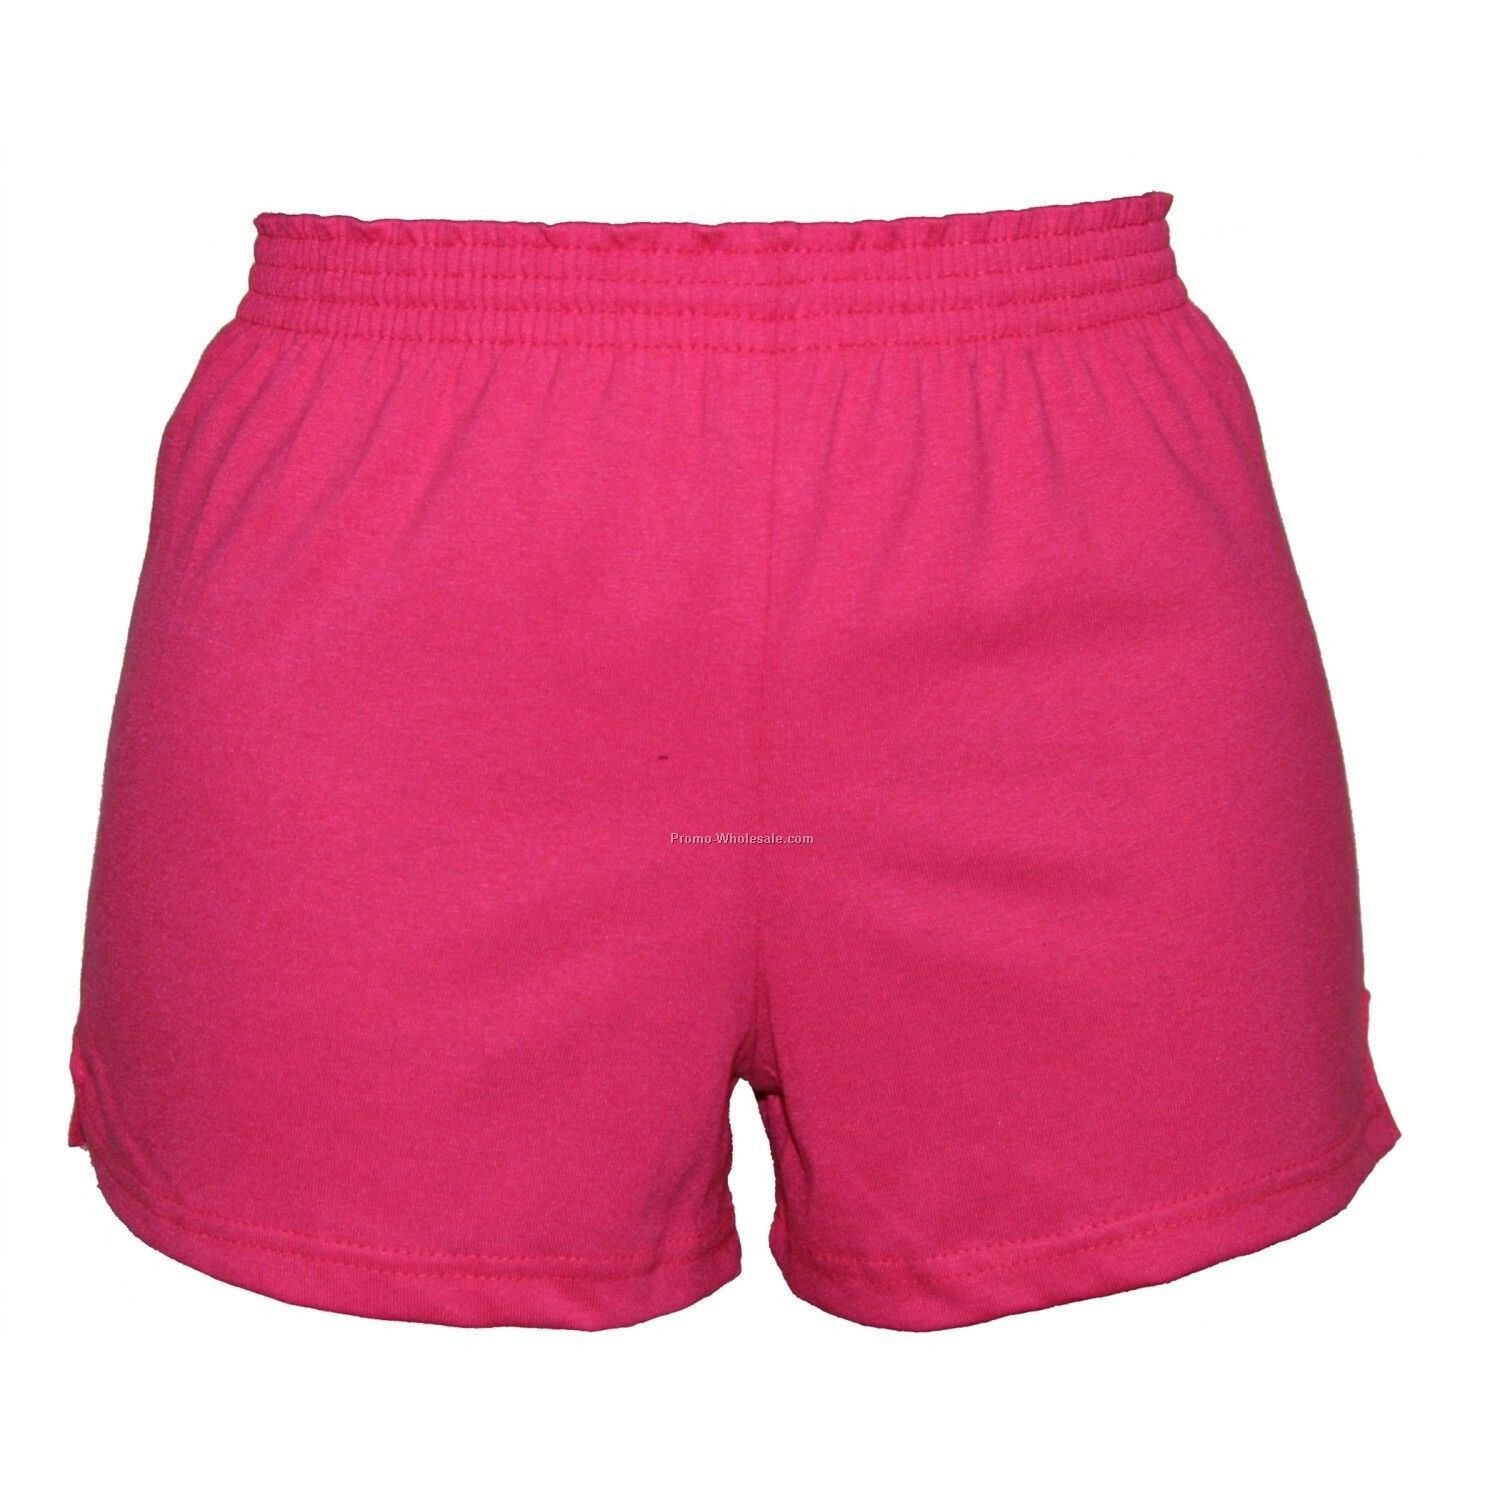 Adults' Fuchsia Pink Spirit Shorts (Xs-xl)